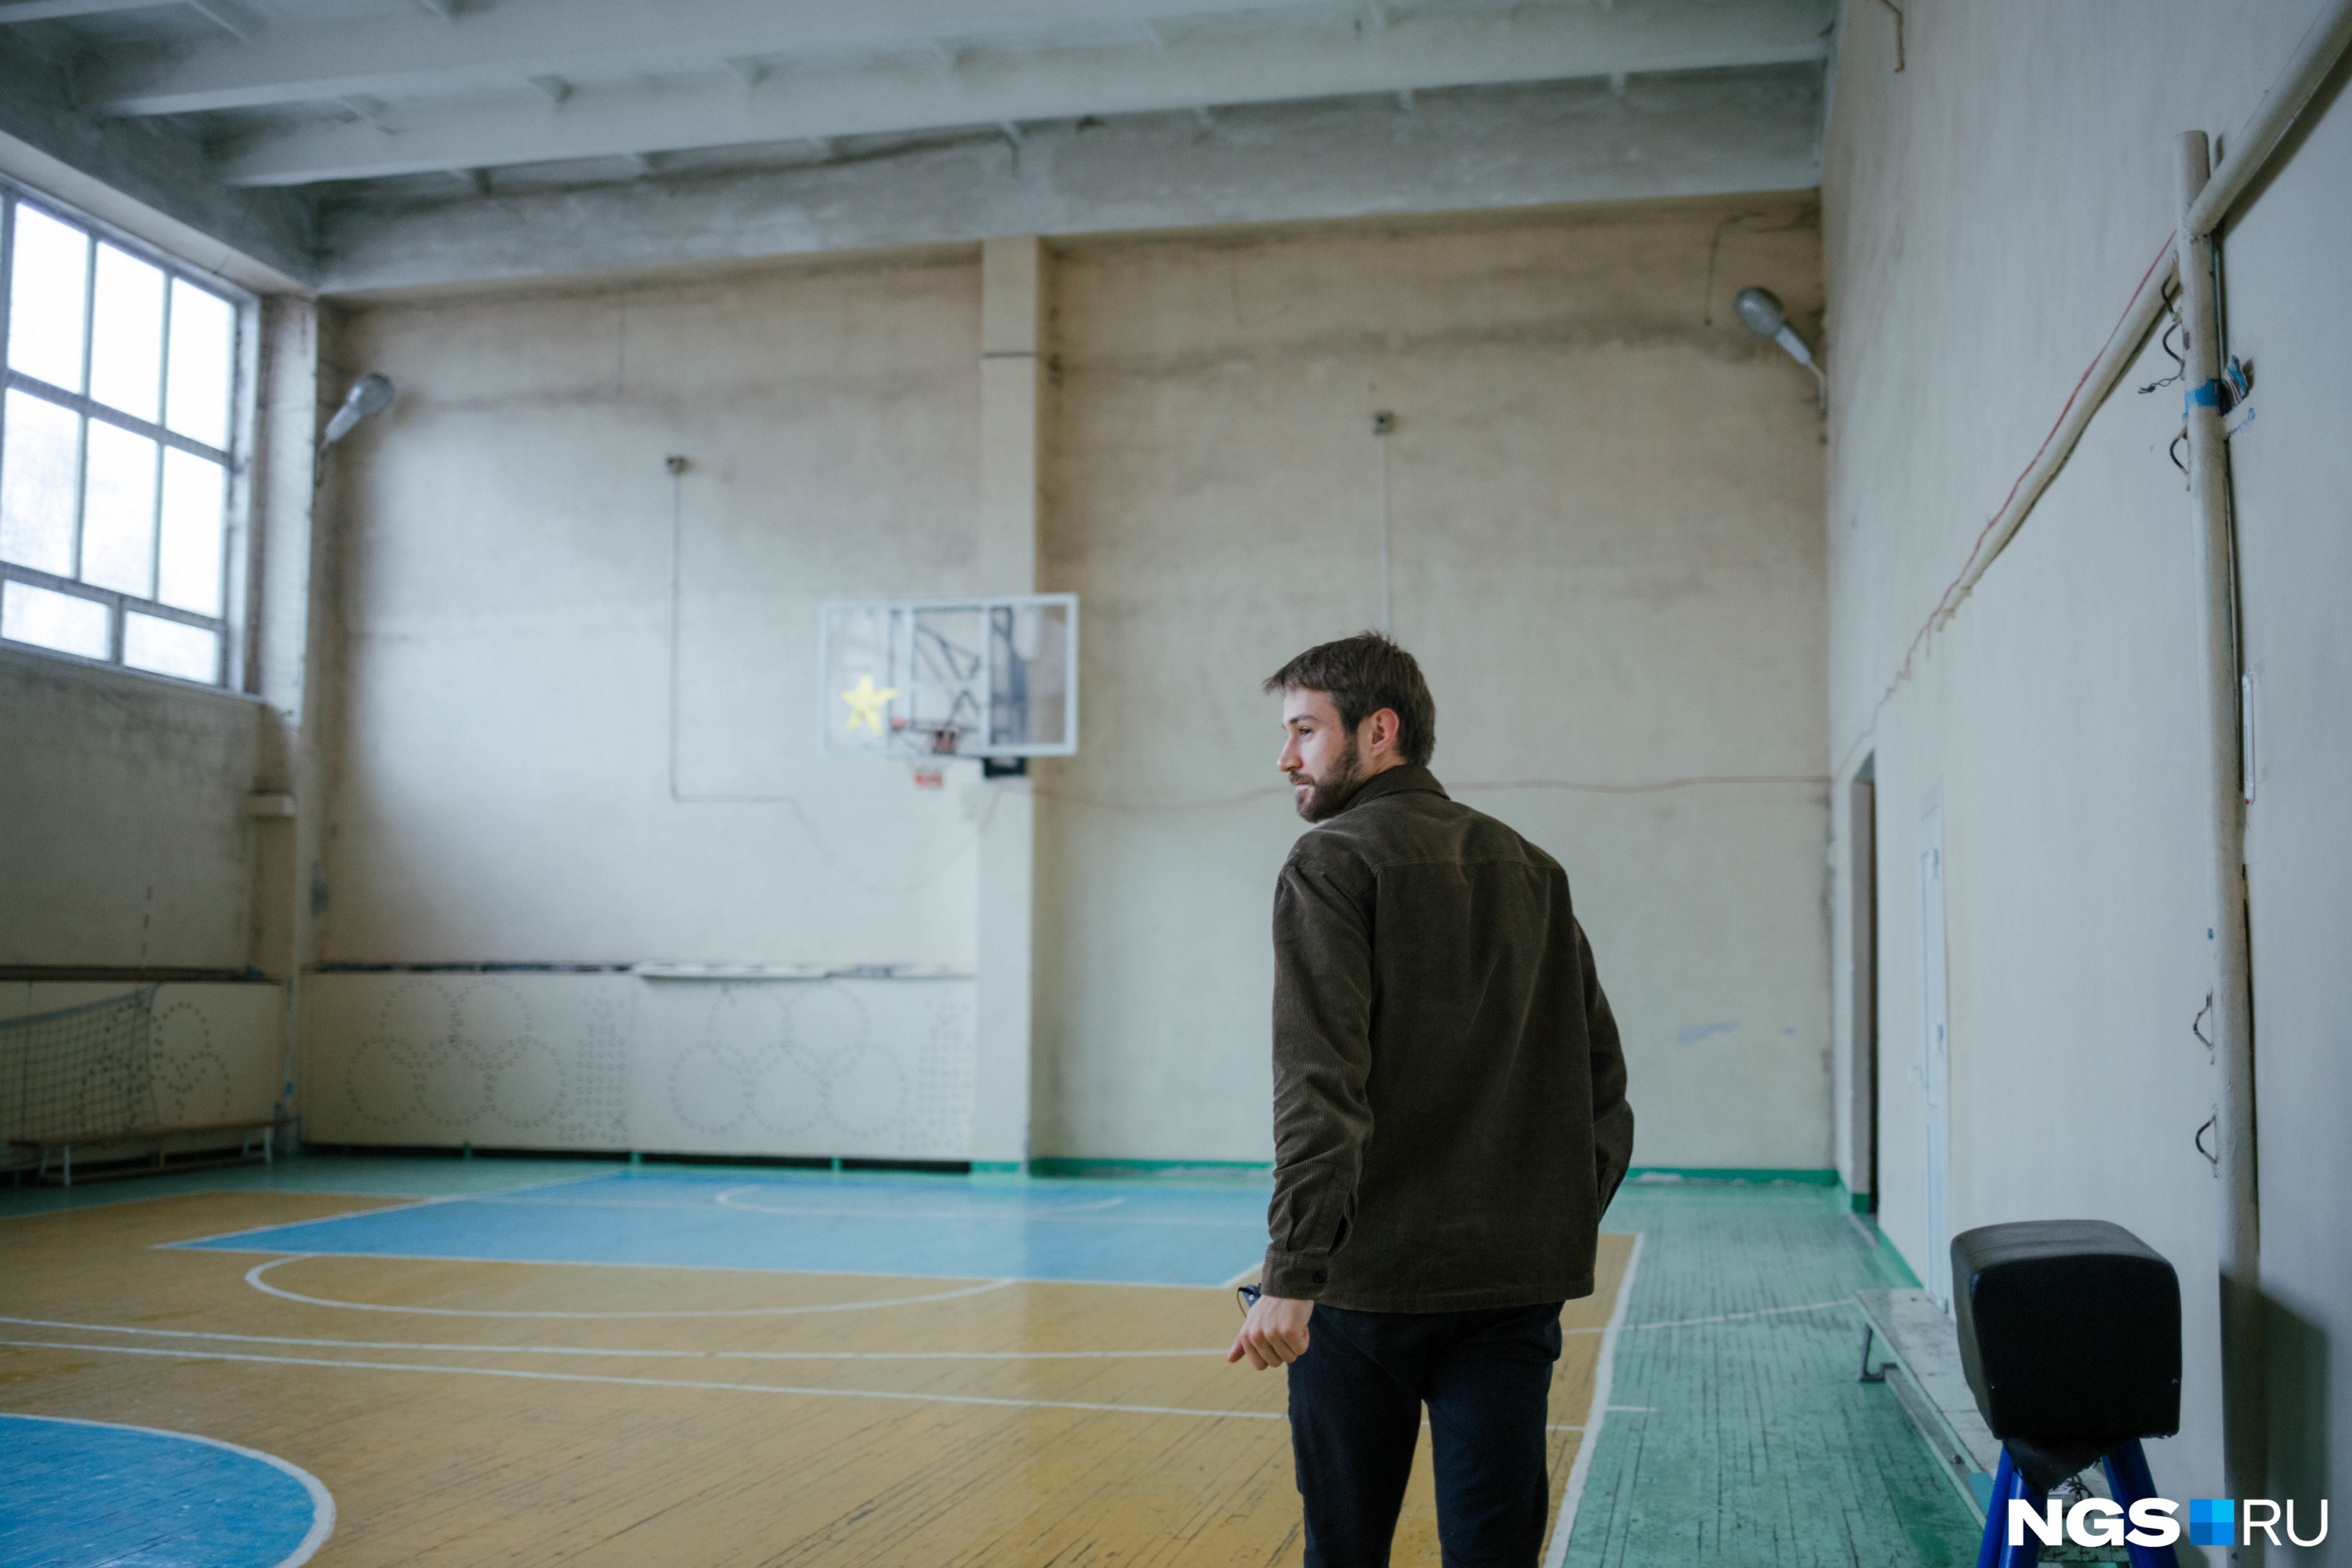 Учитель, переехав в Черепаново, начал болеть за местные спортивные команды: «Сибирь» и «Локомотив» — их эмблемы также висят на стене в кабинете